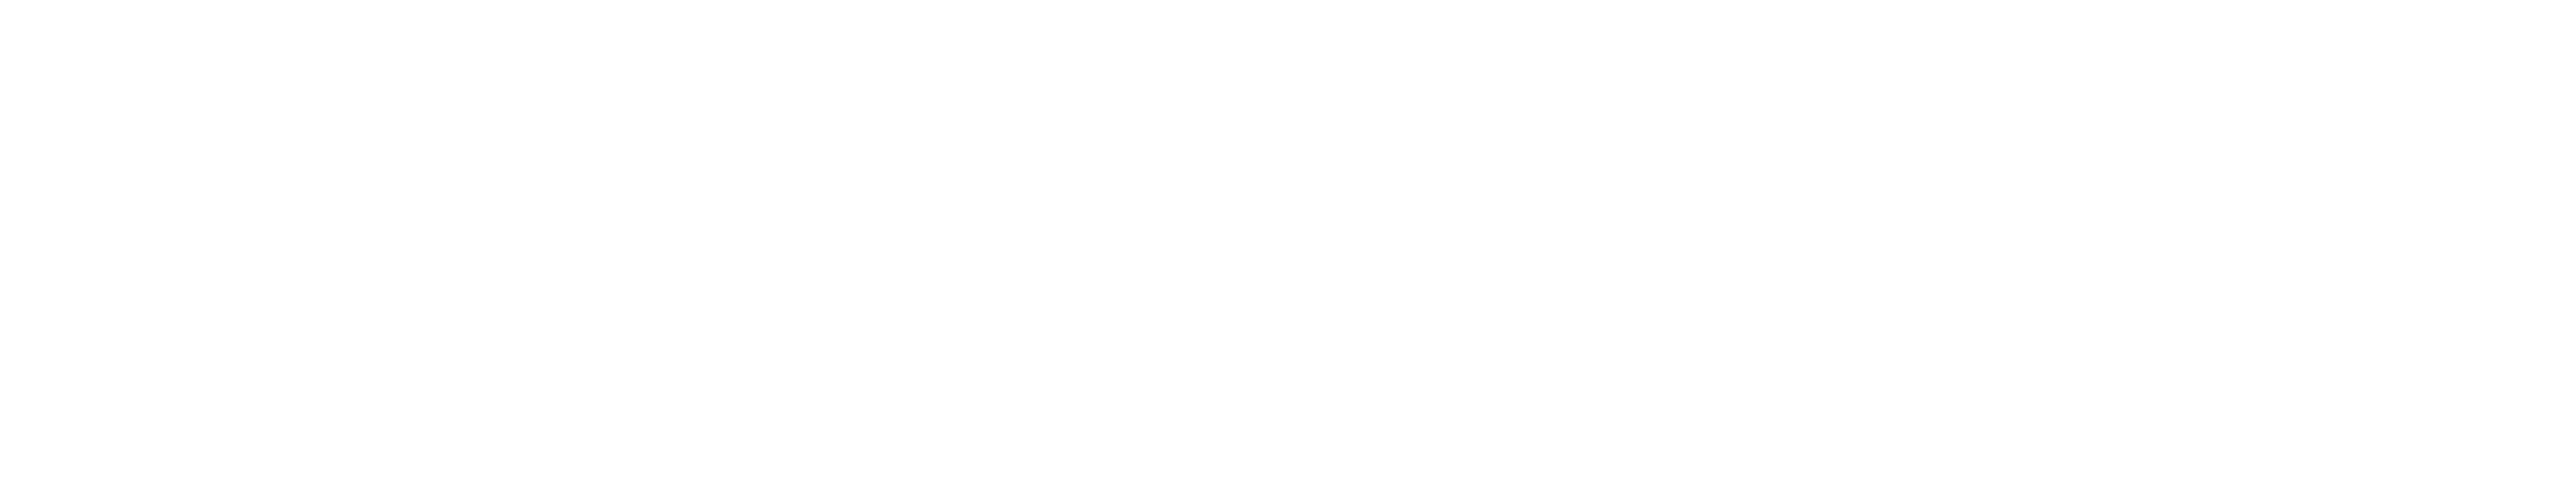 Job Simulator Logo PNG